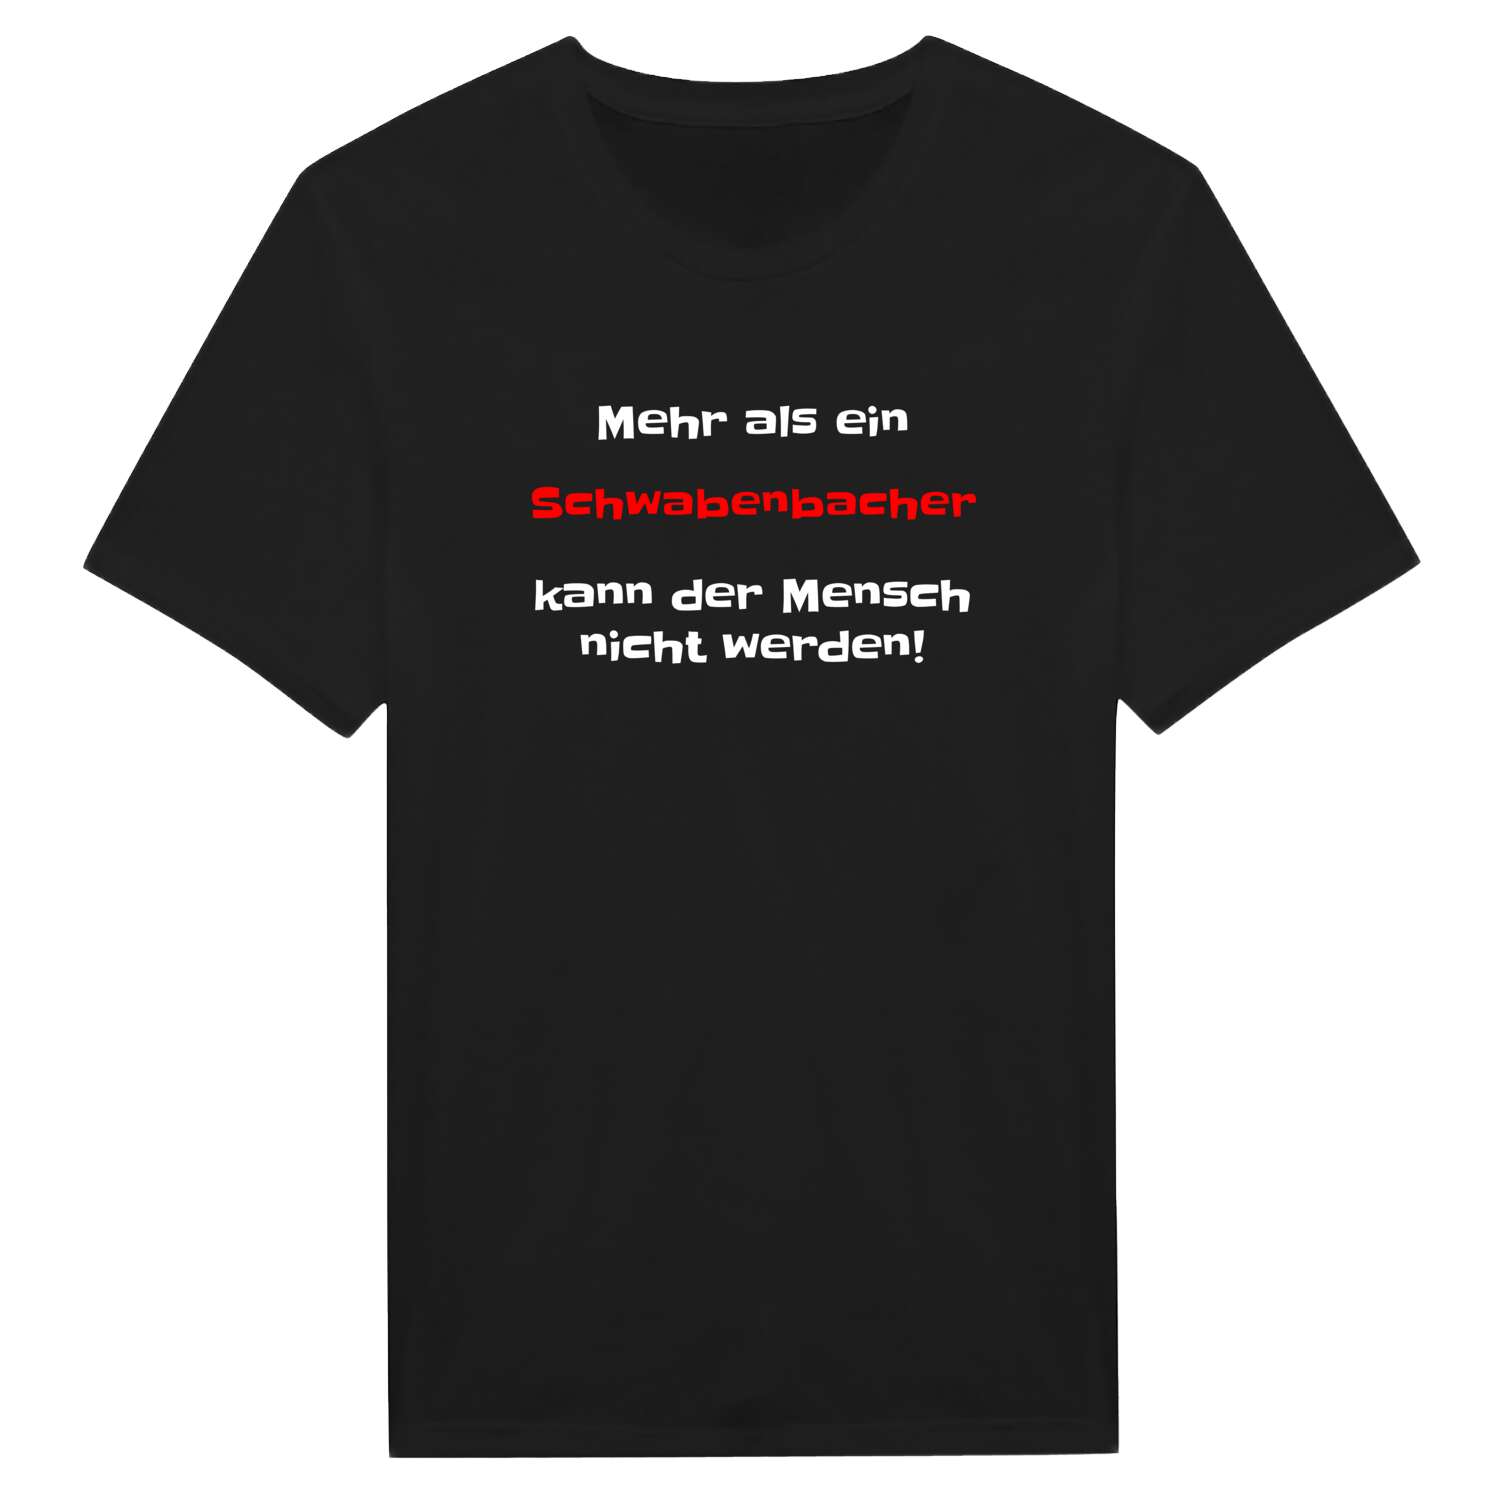 Schwabenbach T-Shirt »Mehr als ein«